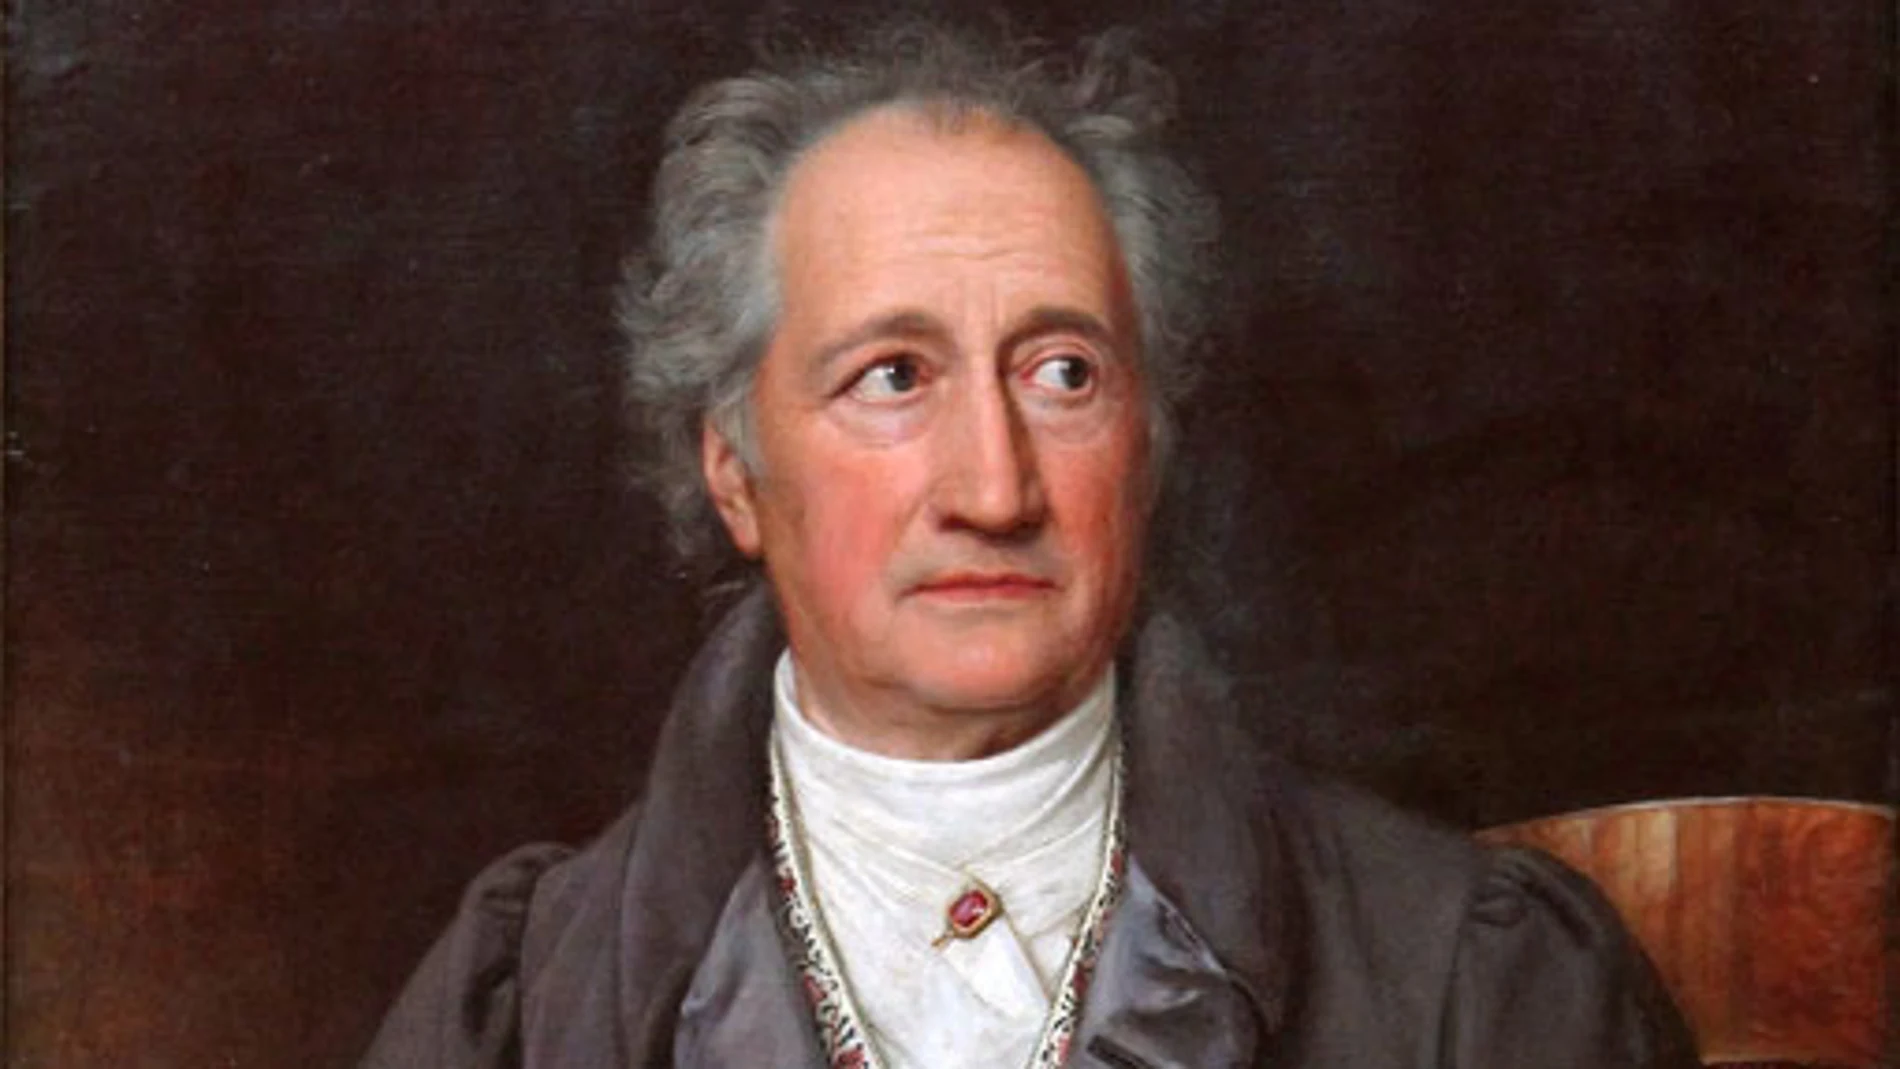 Goethe, retratado por Joseph Karl Stieler en 1828